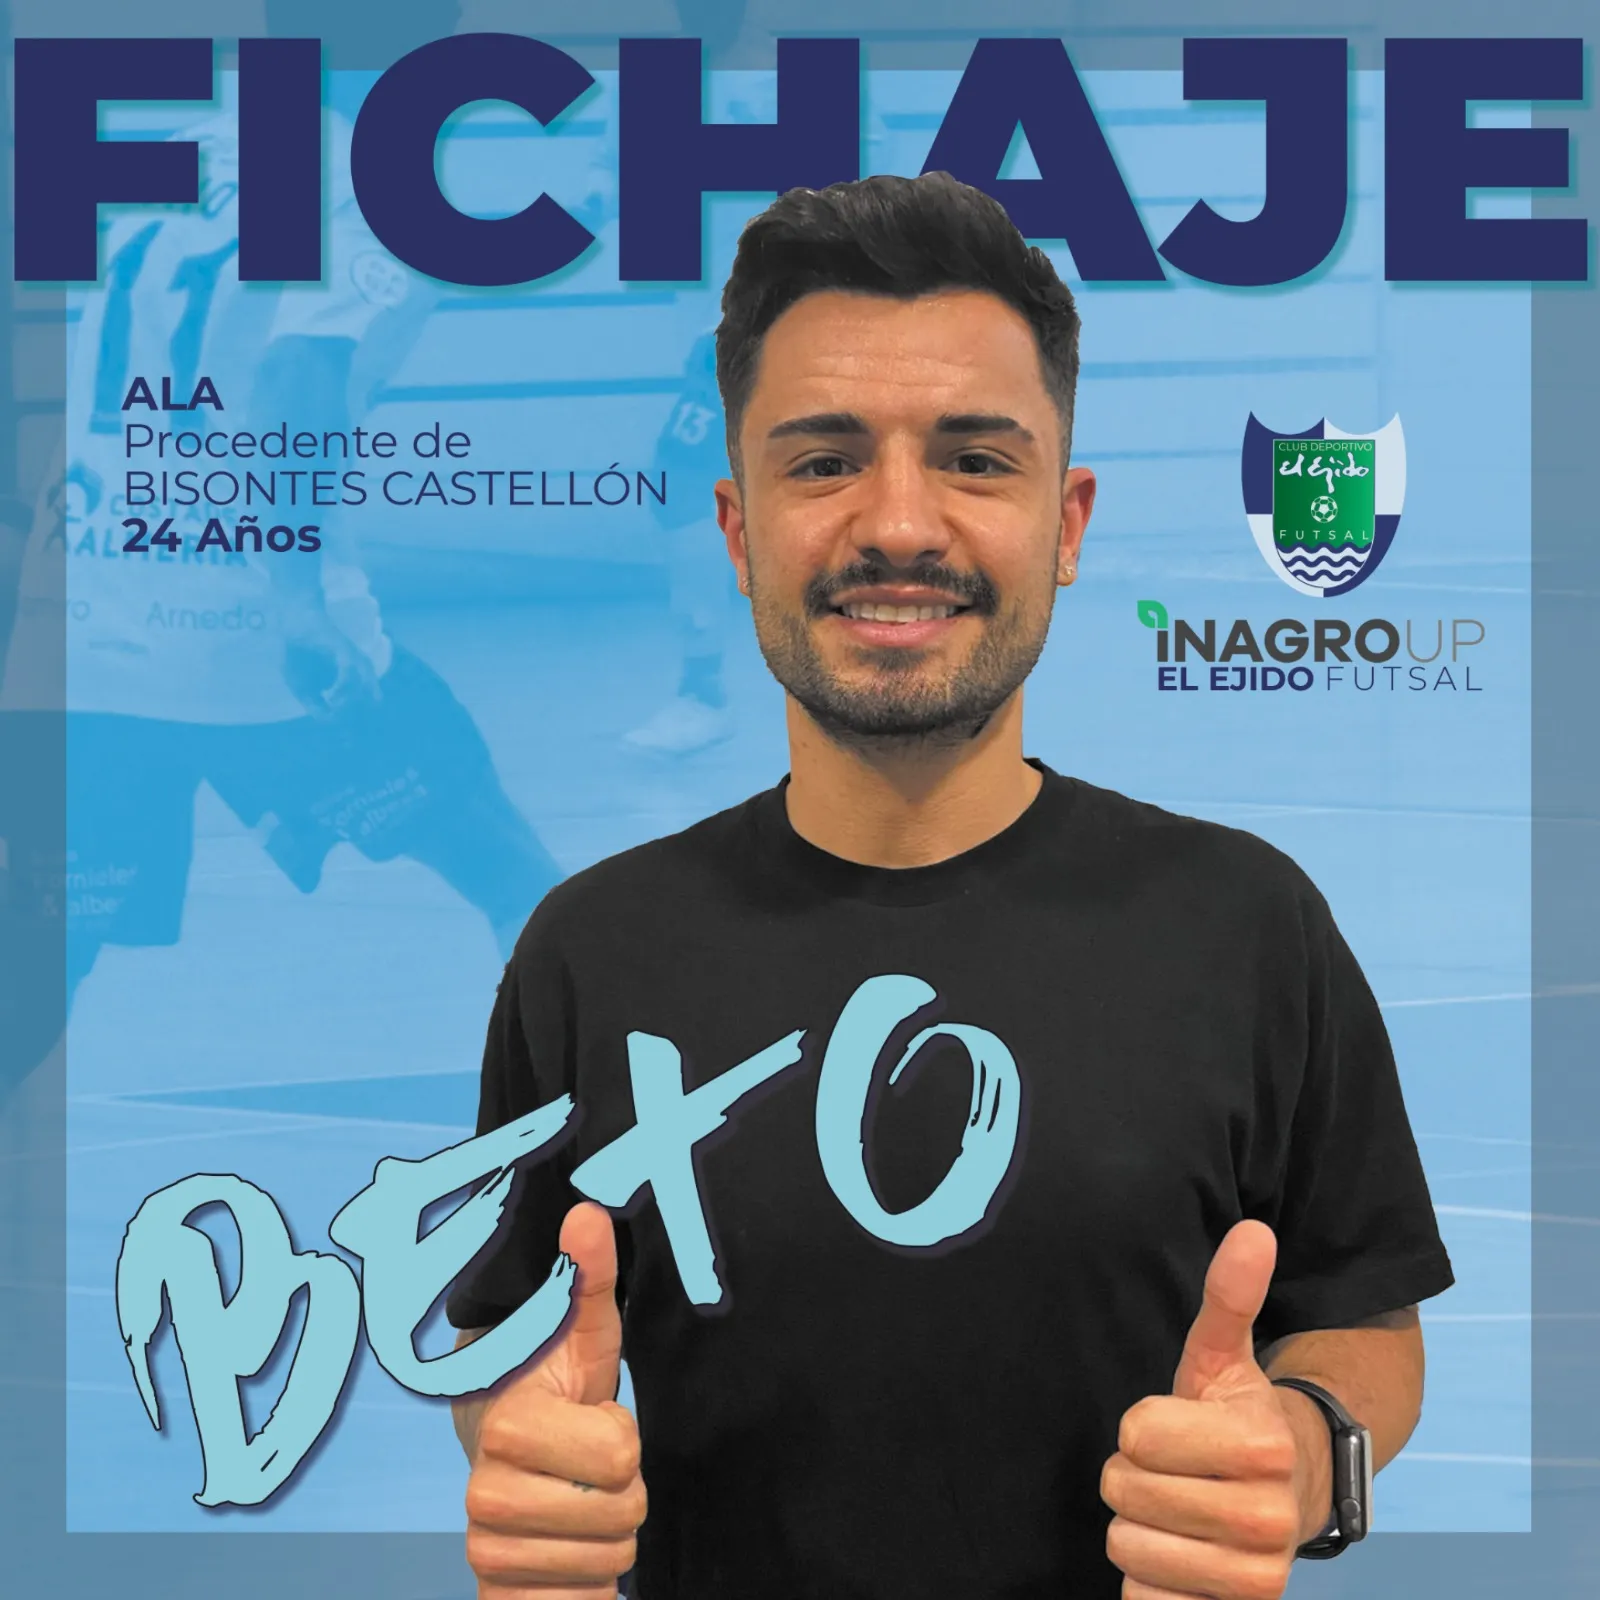 El brasileño Beto, nuevo jugador de Inagroup El Ejido Futsal